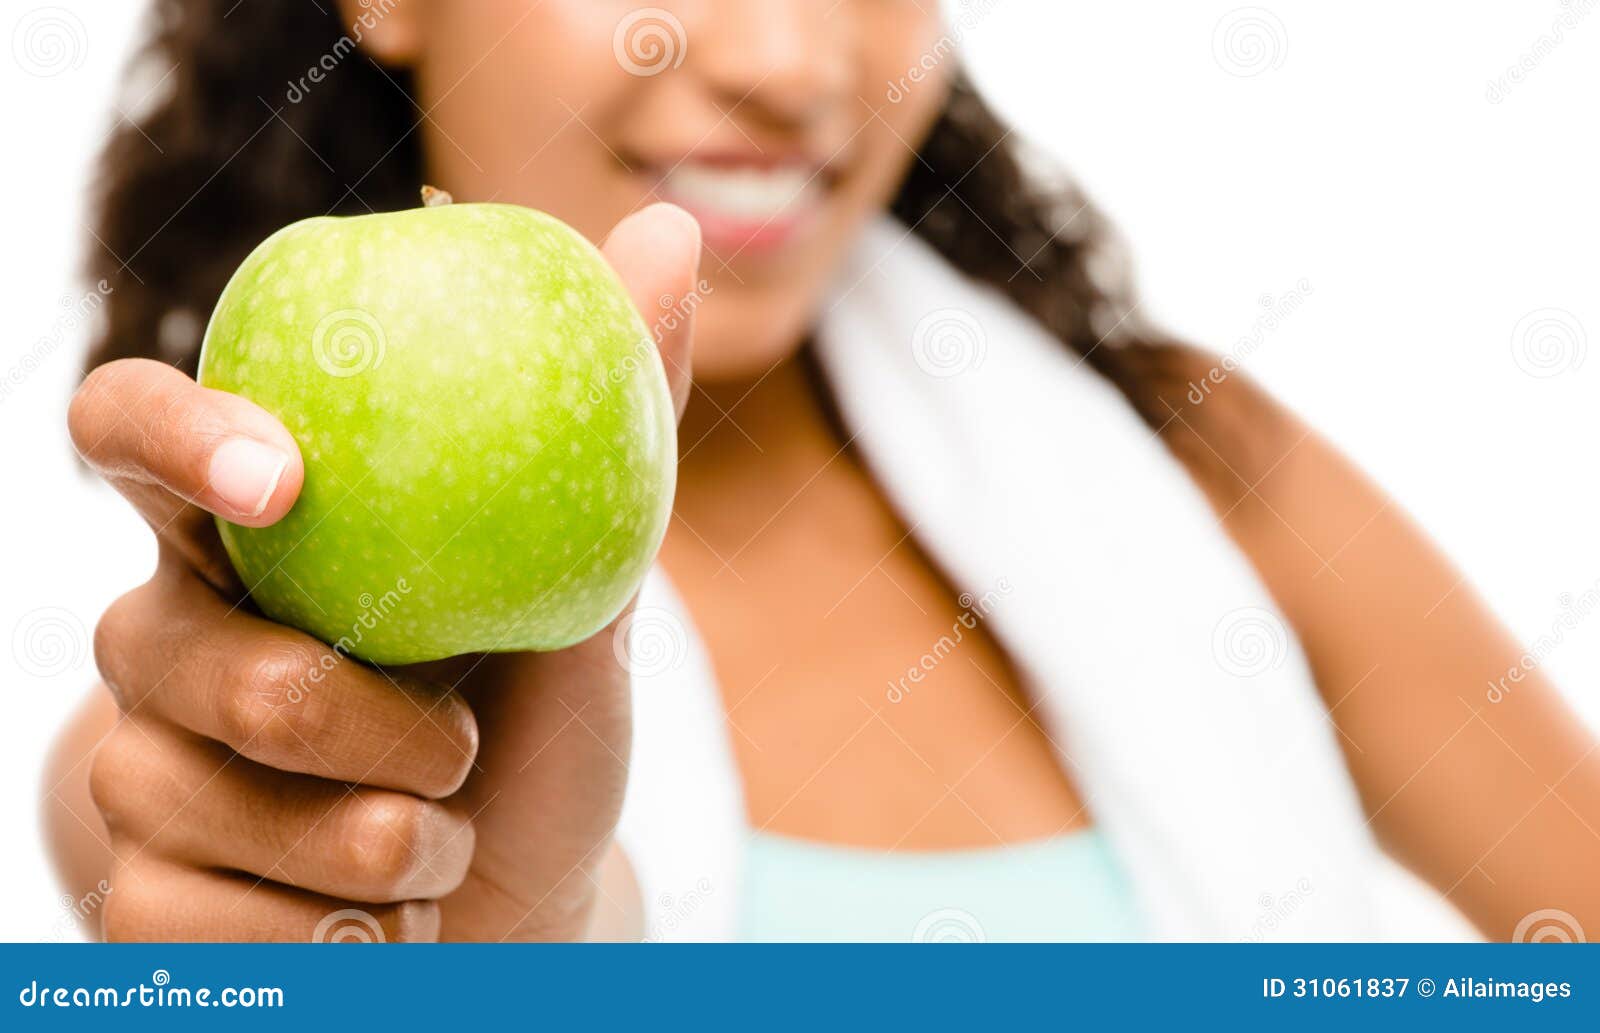 Яблоко едят до еды или после. Зеленые яблоки в руках и фитнес. Здоровое молодое красивое яблоко. Картинка девушка с зелеными яблоками. Женщина с зеленым яблоком в руке фото.